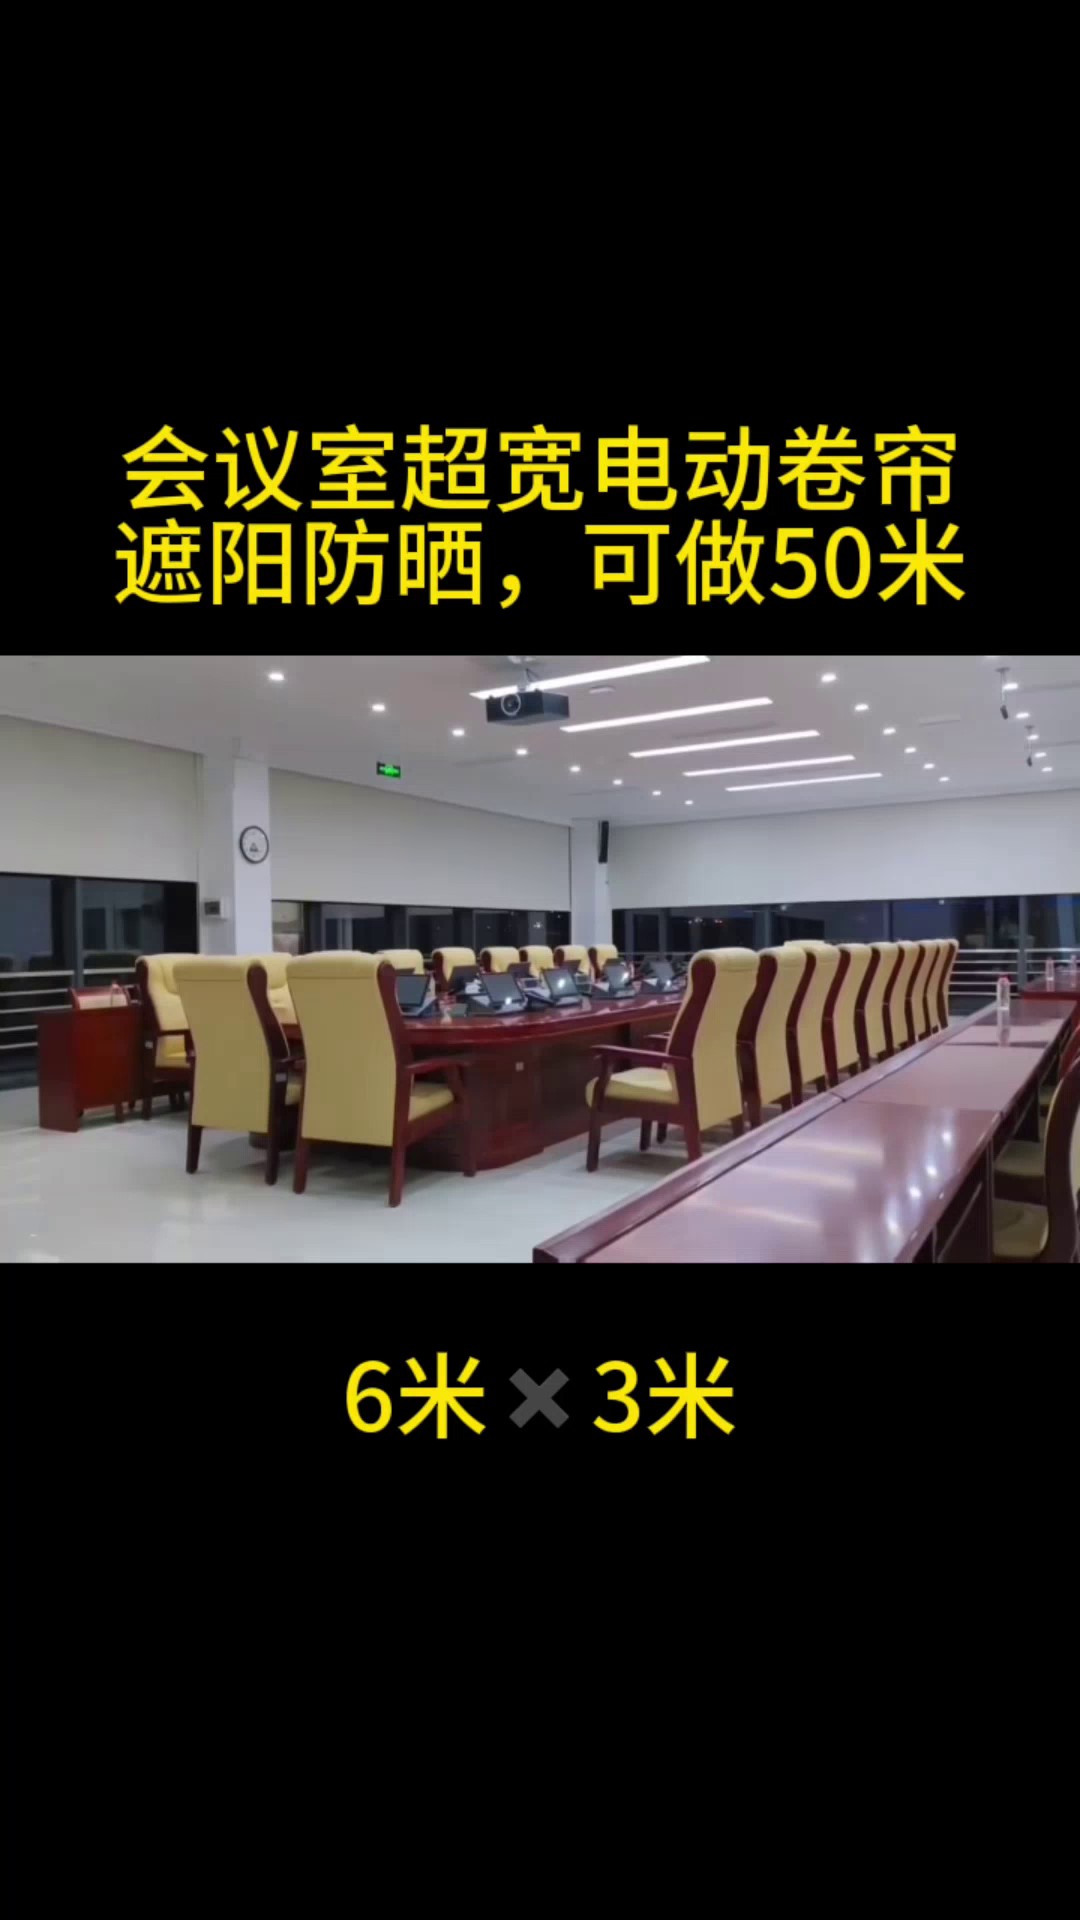 上海双层超宽电动卷帘控制方式,超宽电动卷帘